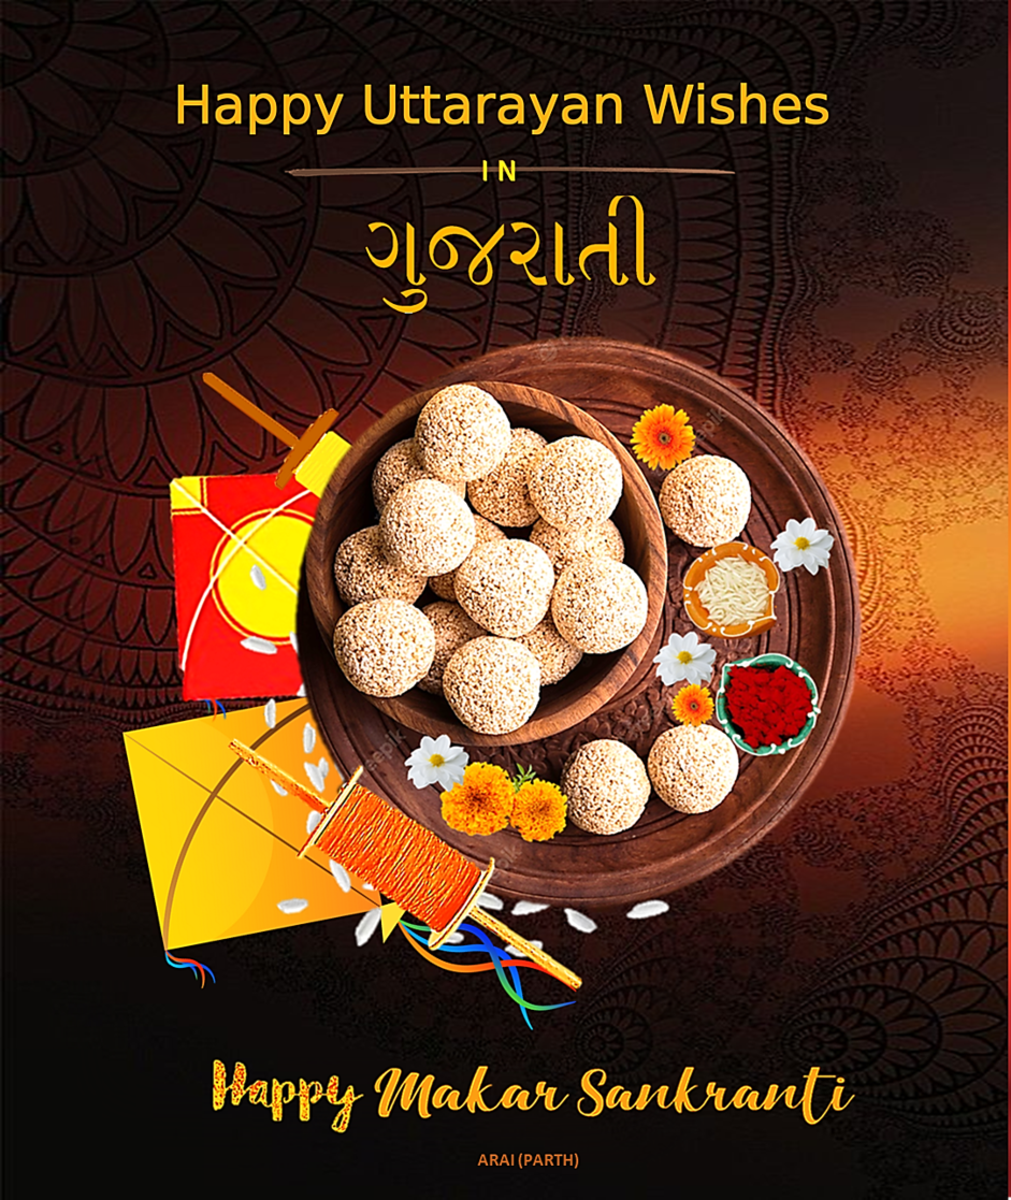 makar-sankranti-uttarayan-wishes-and-greetings-in-gujarati-language